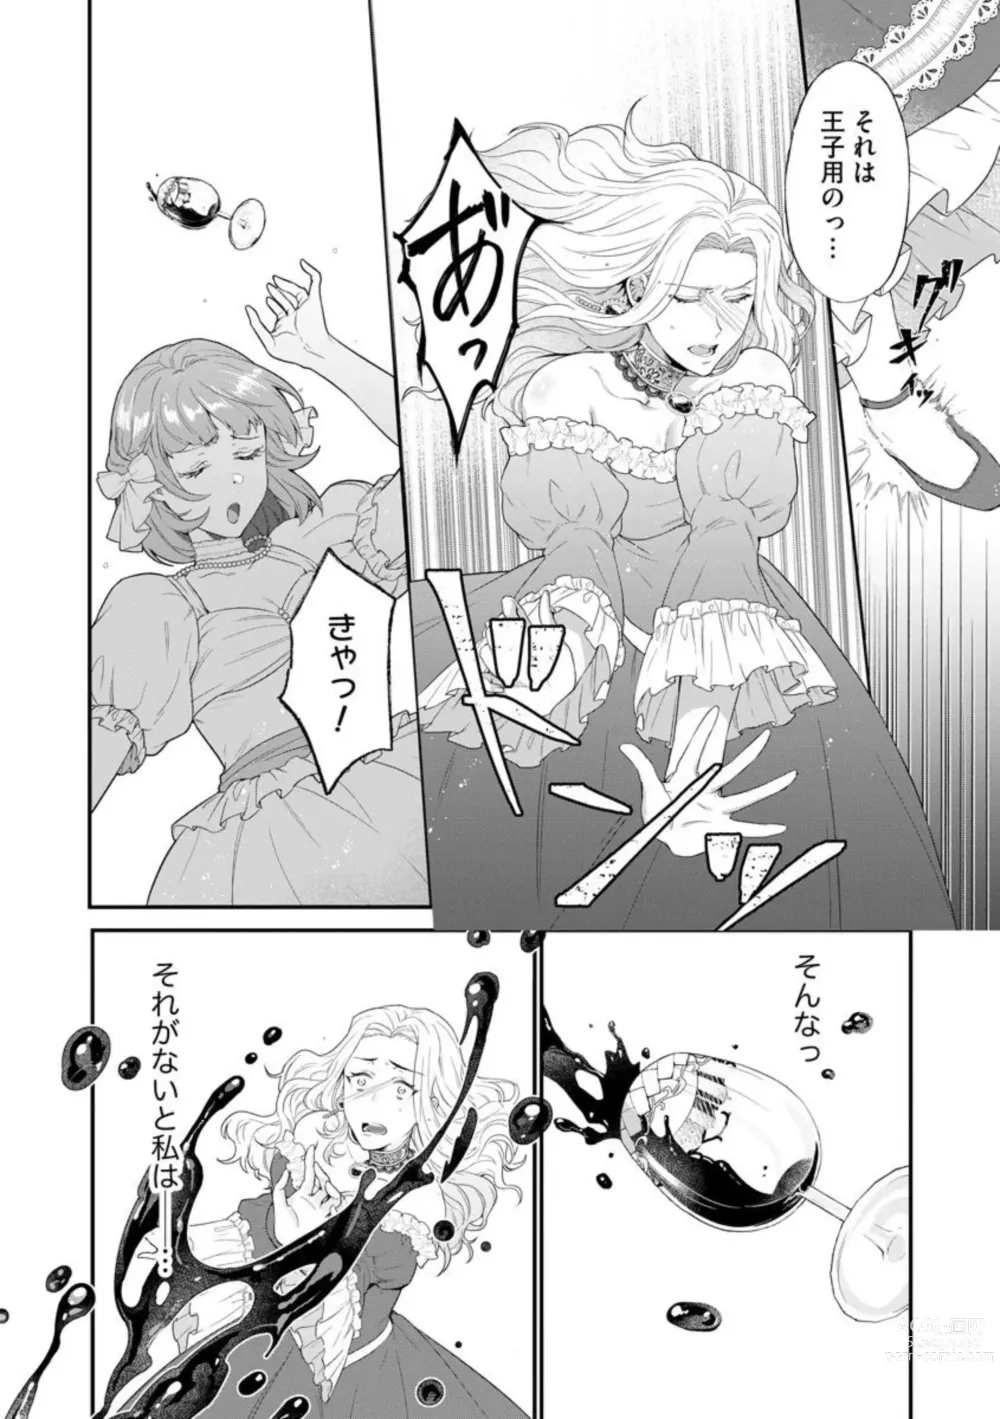 Page 10 of manga Kaibutsu Hakushaku no Amai Hana Akuyaku Reijou wa Bed de Midare Chiru 1